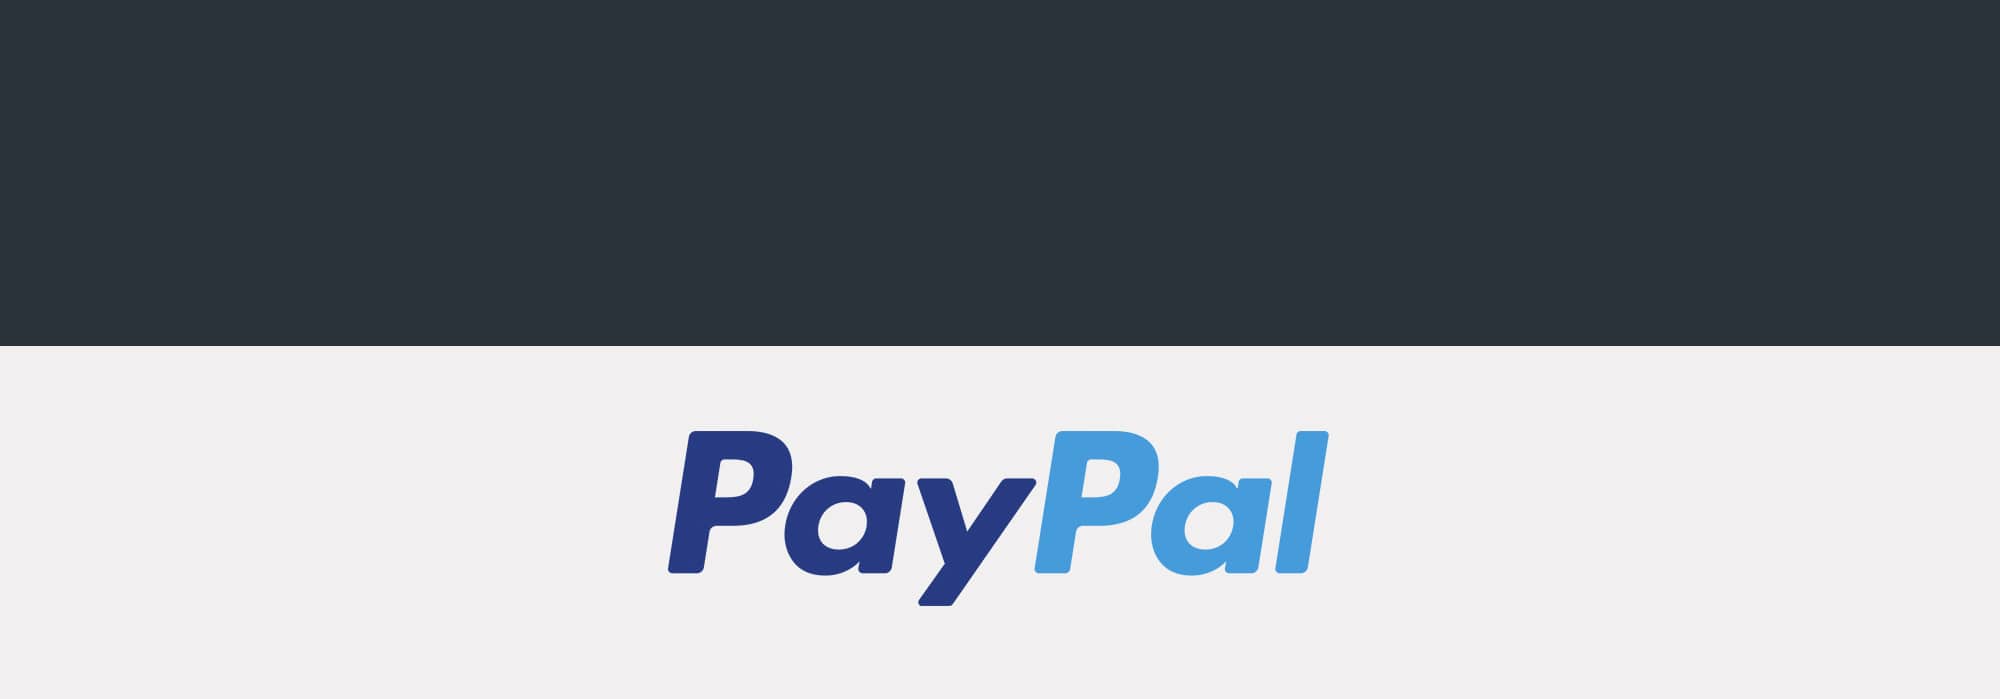 سرور مجازی پی پال PayPal